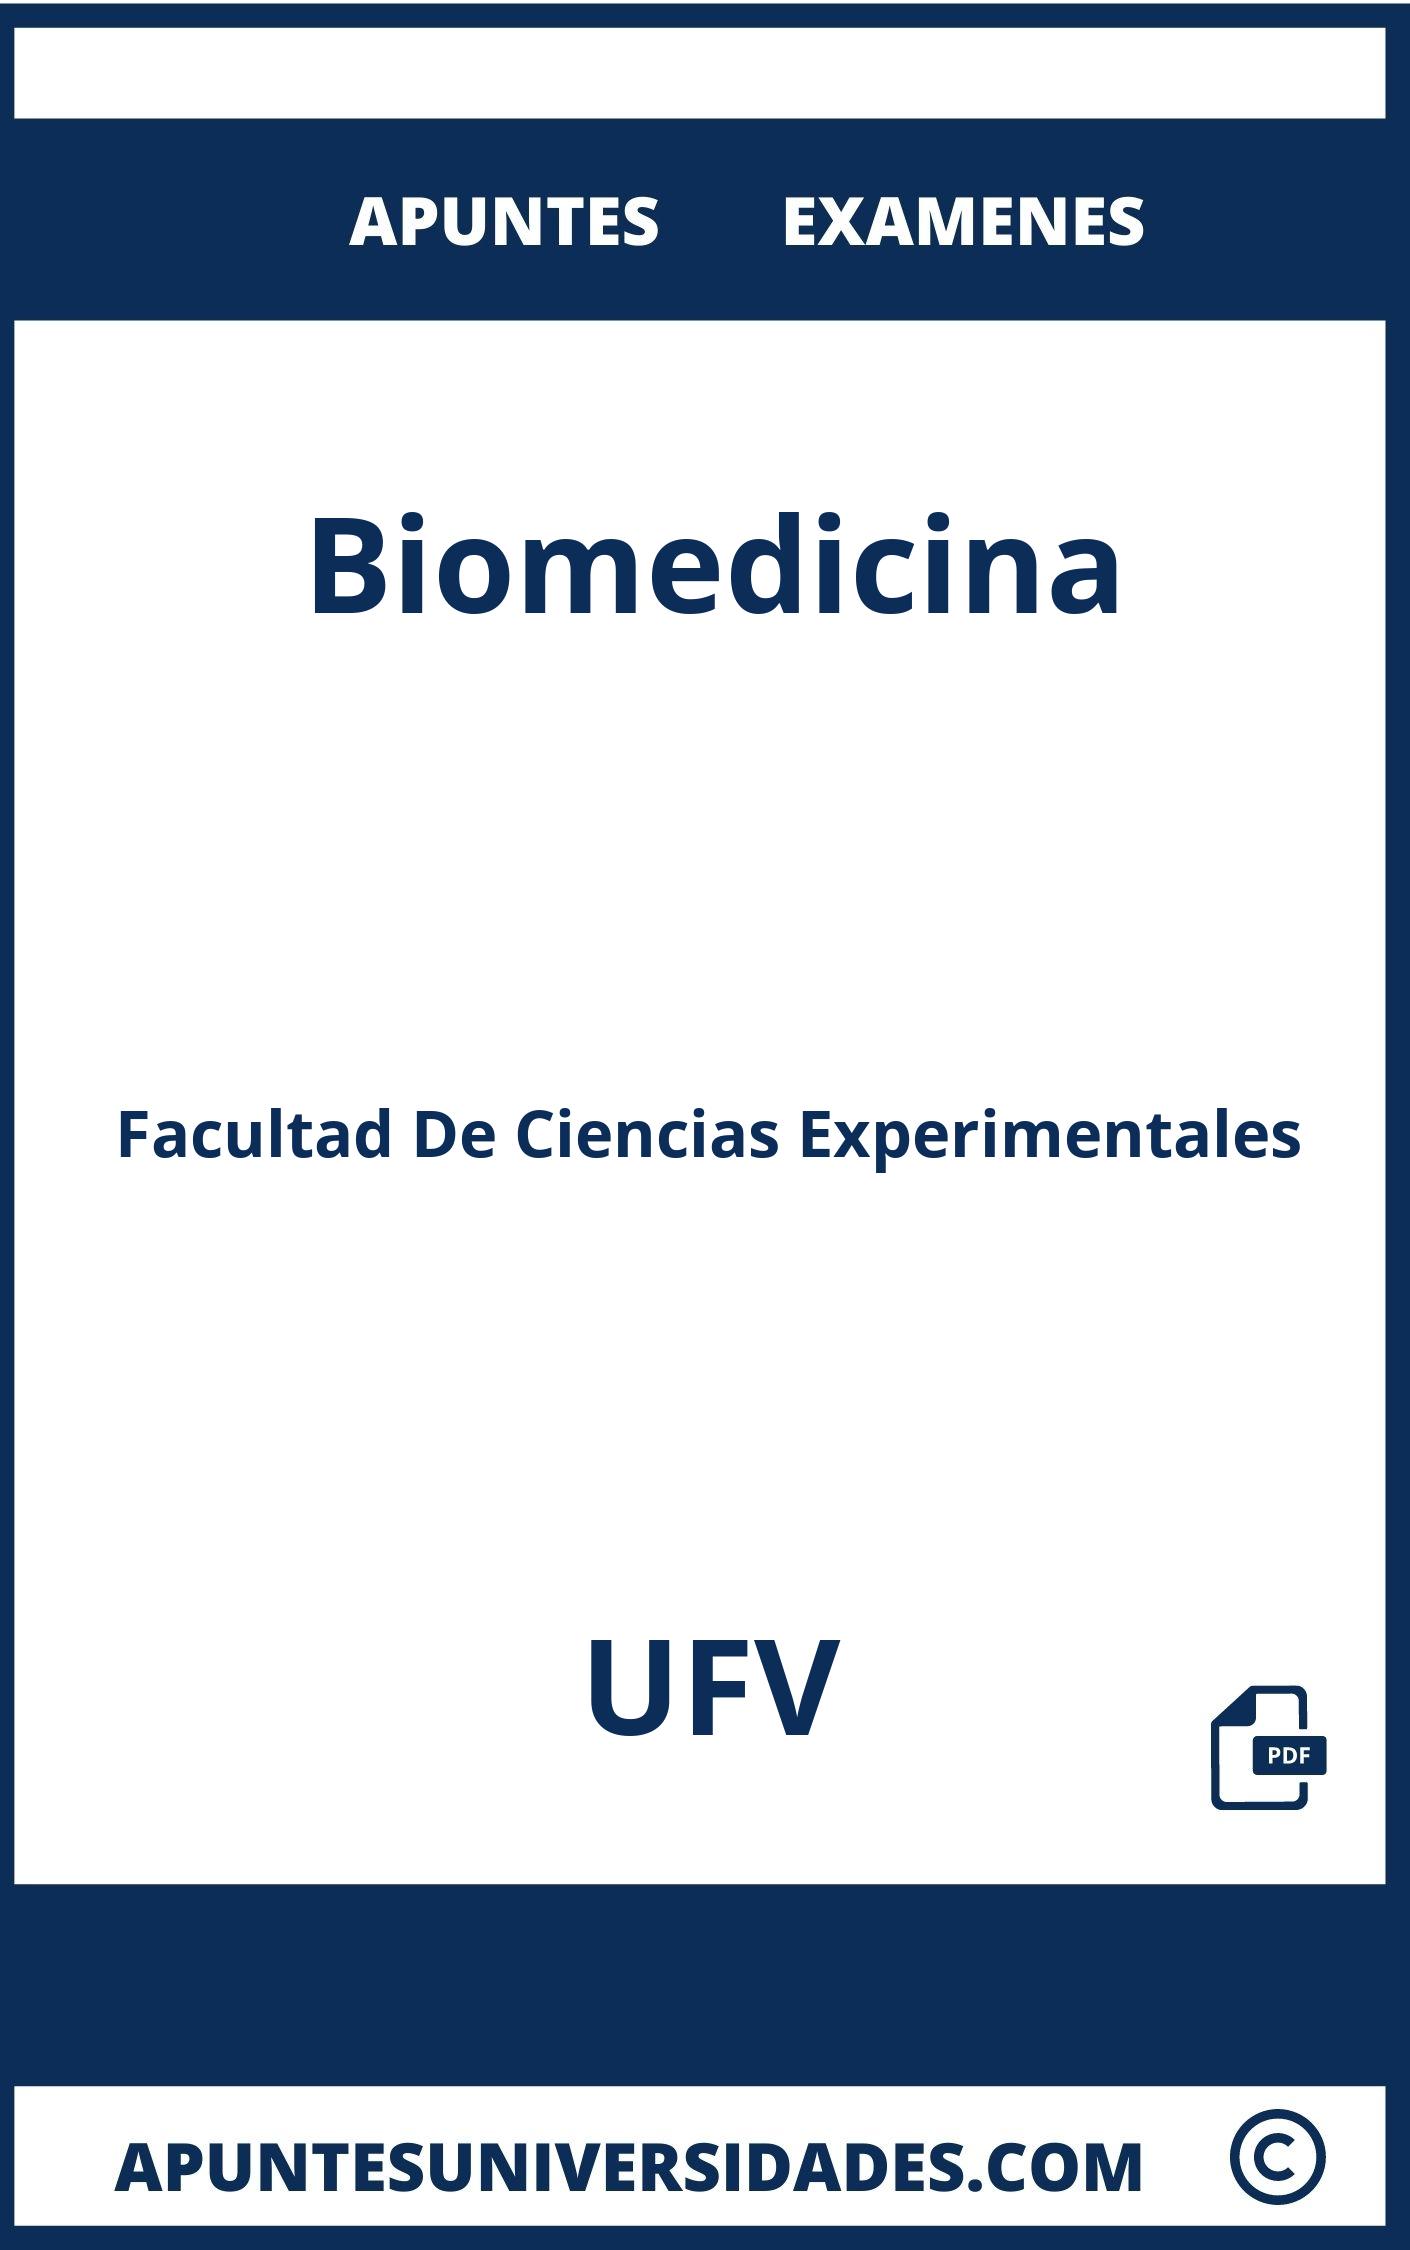 Apuntes y Examenes de Biomedicina UFV